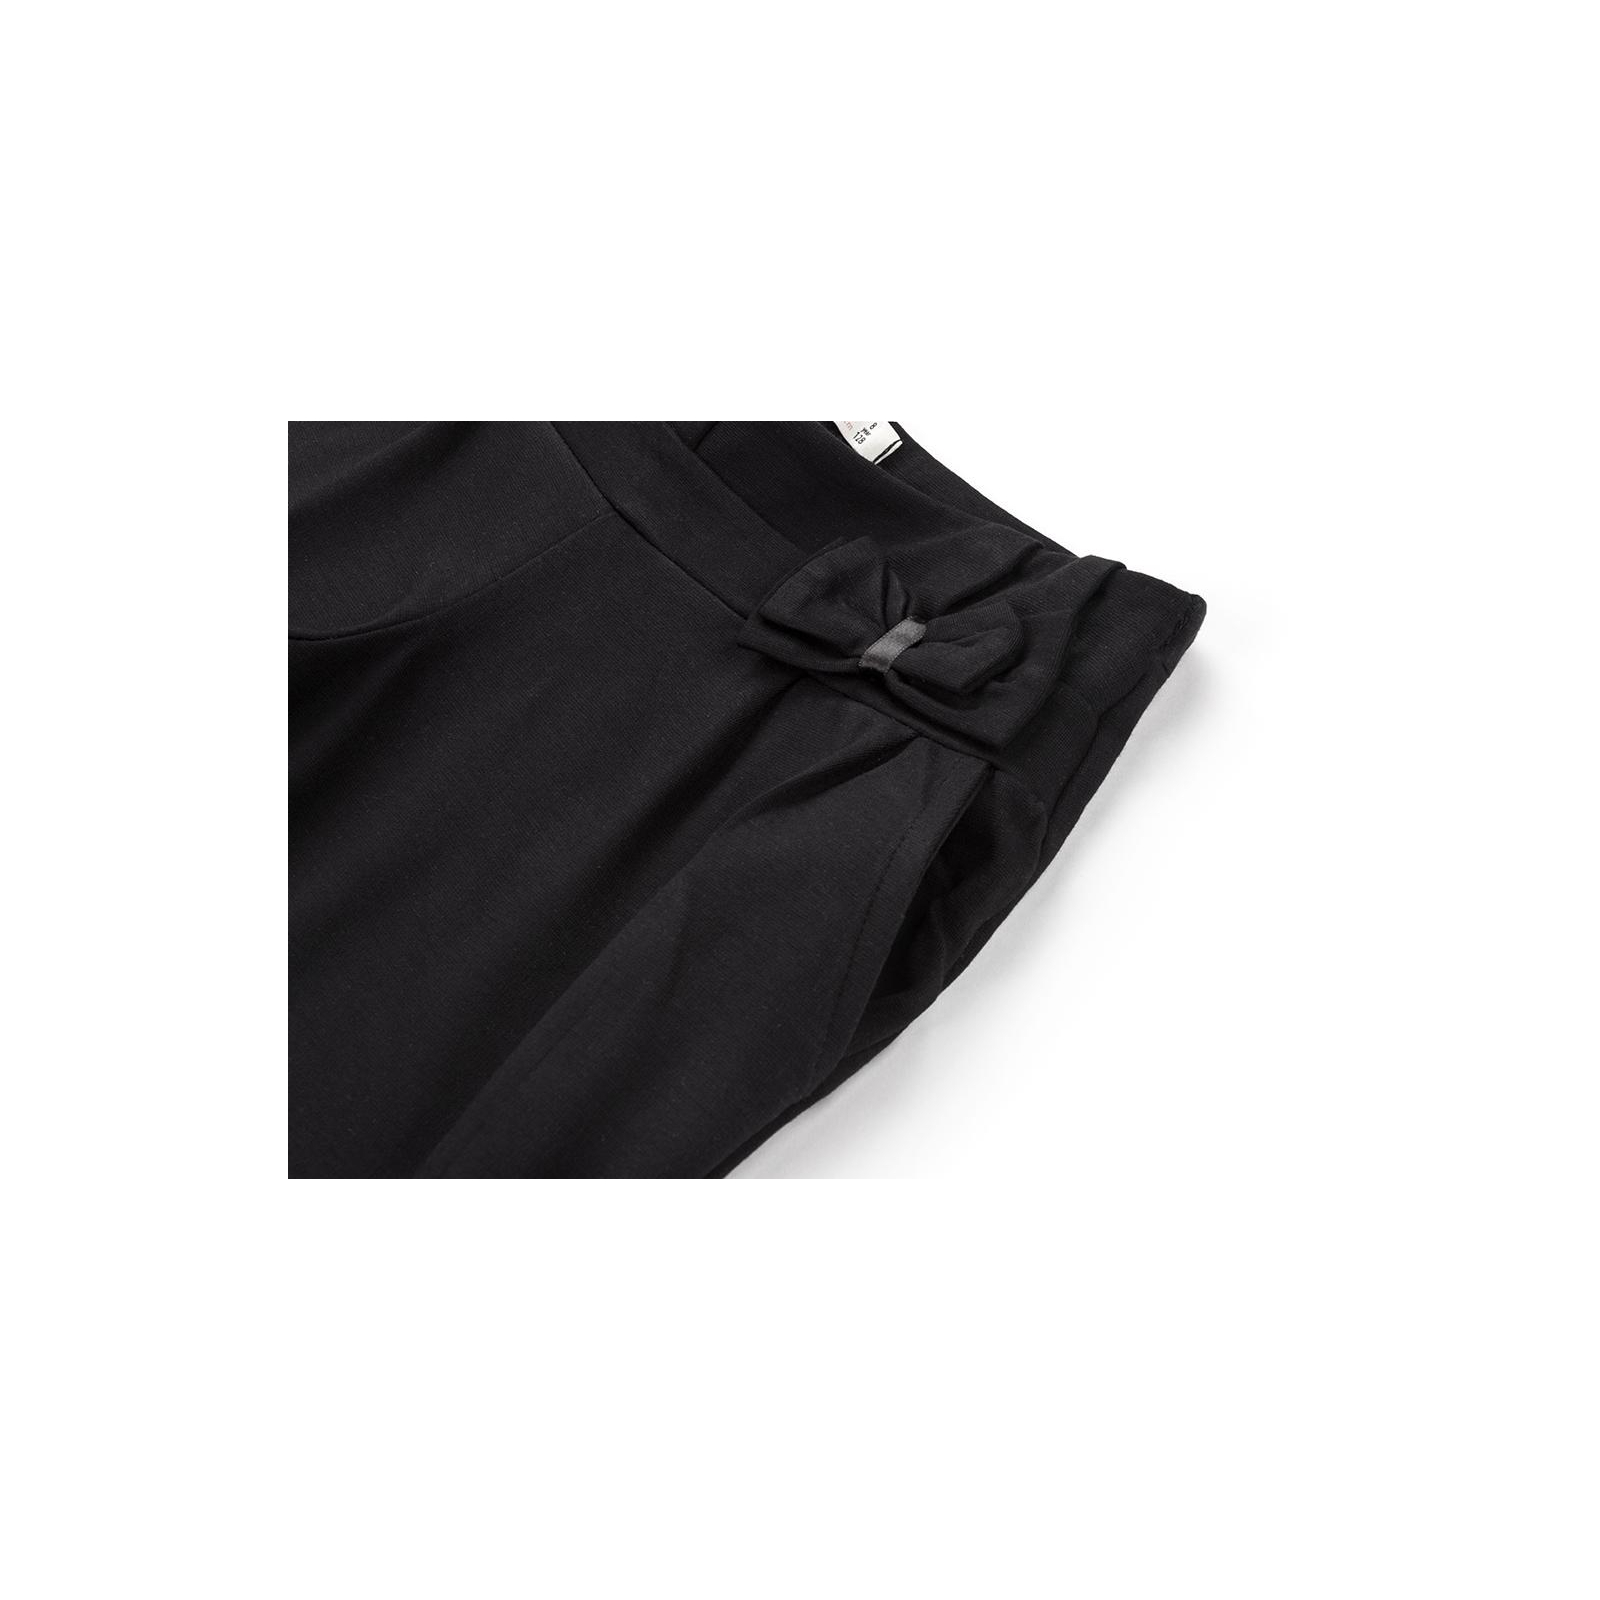 Штани дитячі Breeze з бантиком (11174-152G-black) зображення 4